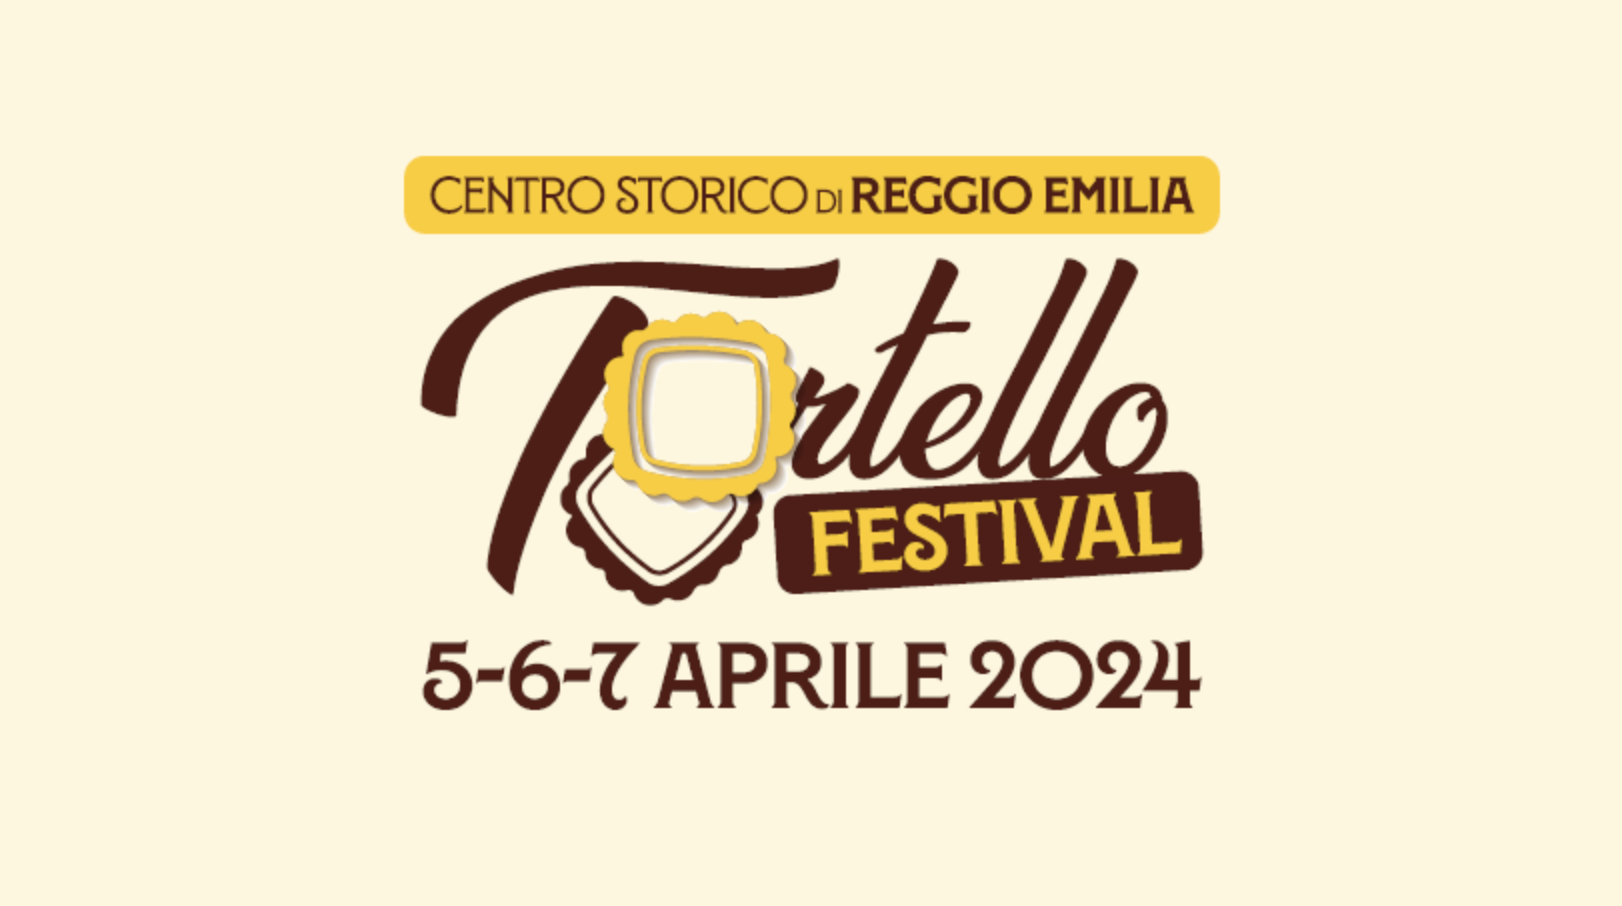 Tortello Festival